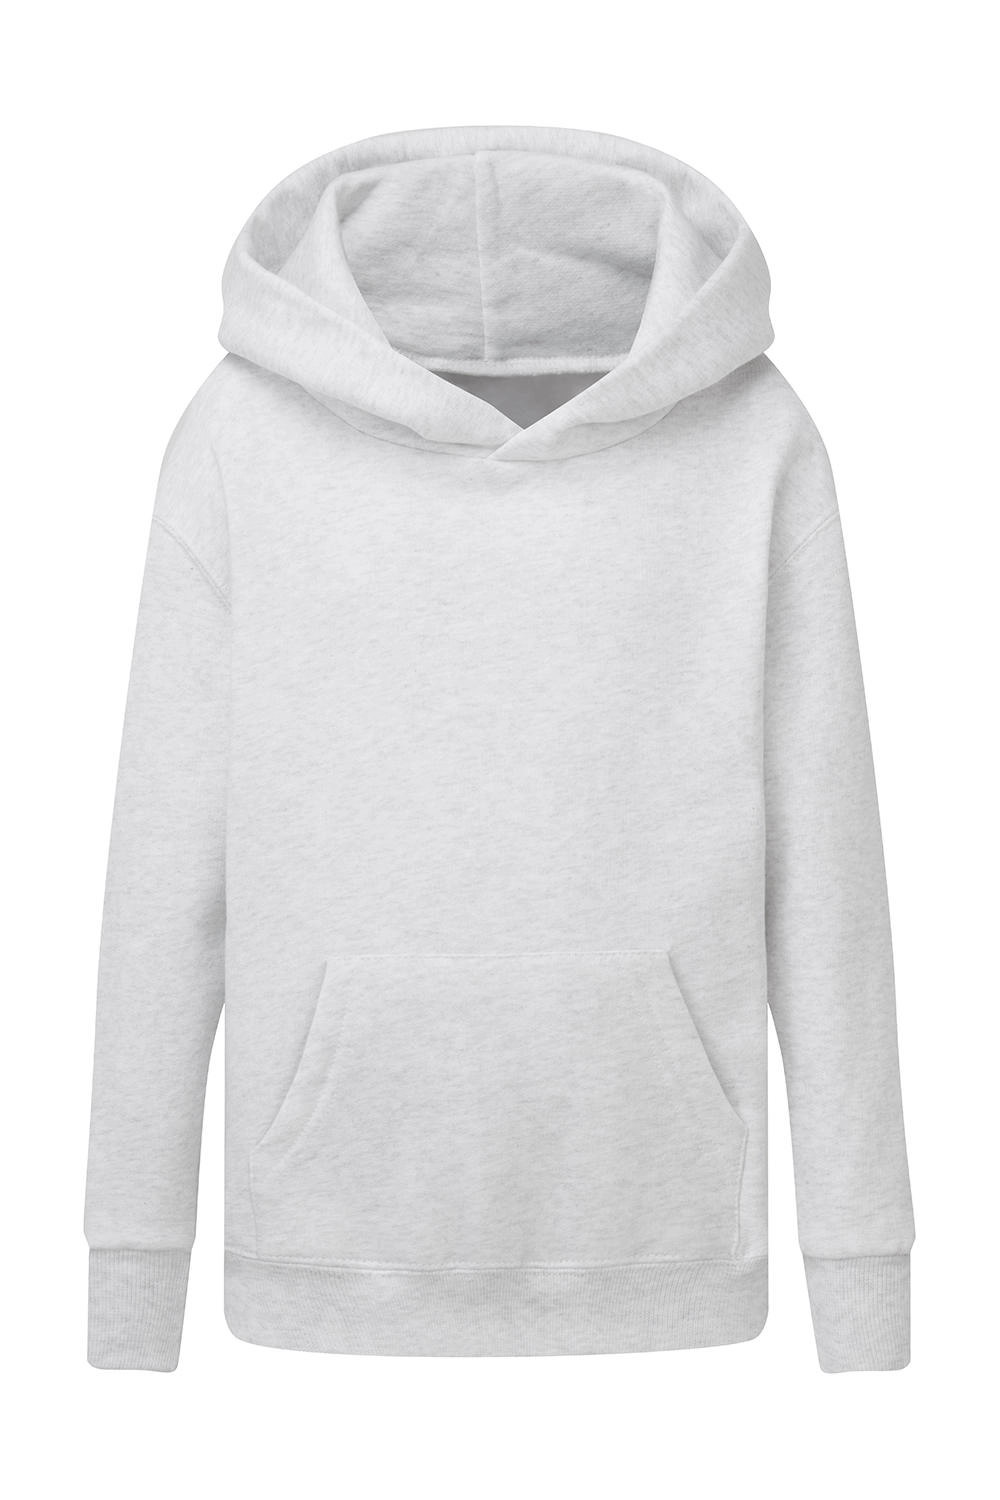 Hooded Sweatshirt Kids zum Besticken und Bedrucken in der Farbe Ash Grey mit Ihren Logo, Schriftzug oder Motiv.